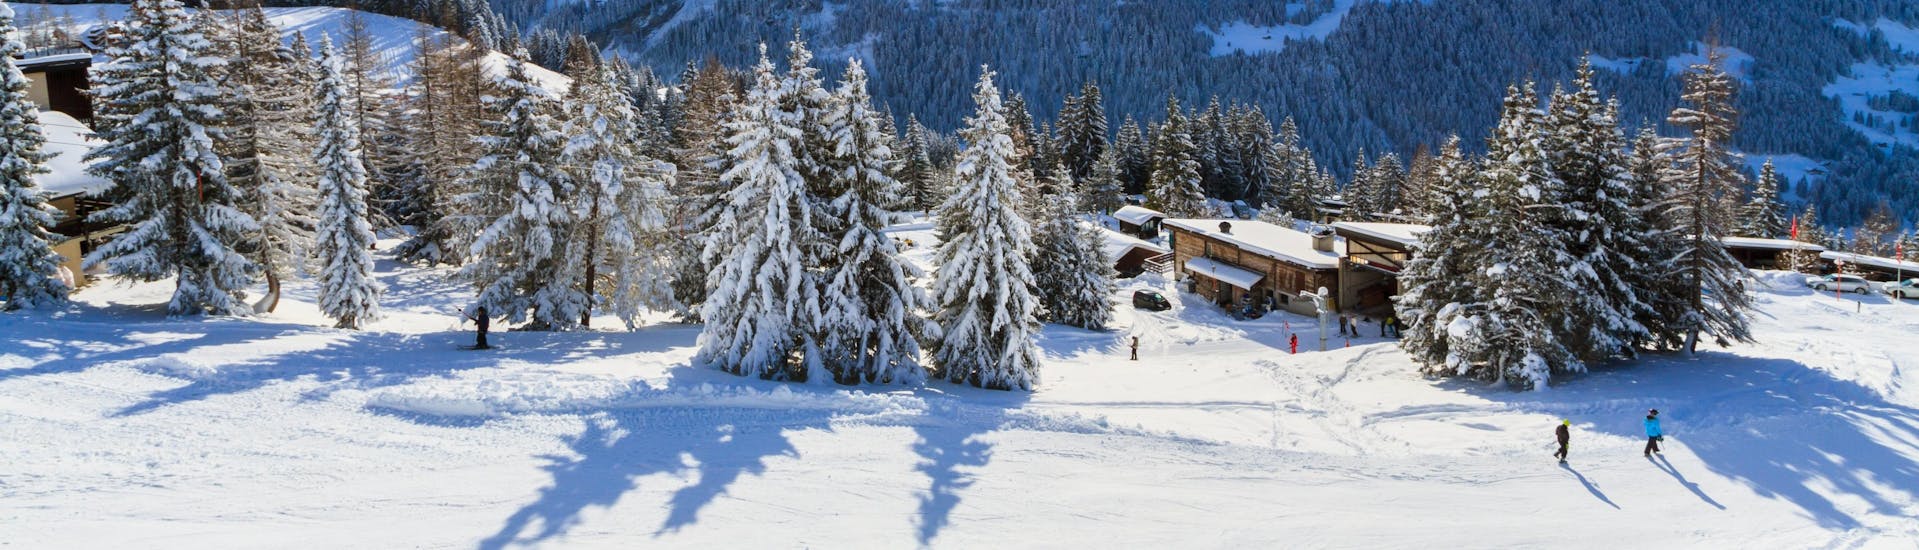 Ein Panoramablick auf die Skipisten und die umliegenden Berge von Villars-Gryon, einem beliebten schweizer Skigebiet im Kanton Vaud, in dem Besucher bei einer der örtlichen Skischulen einen Skikurs buchen können.